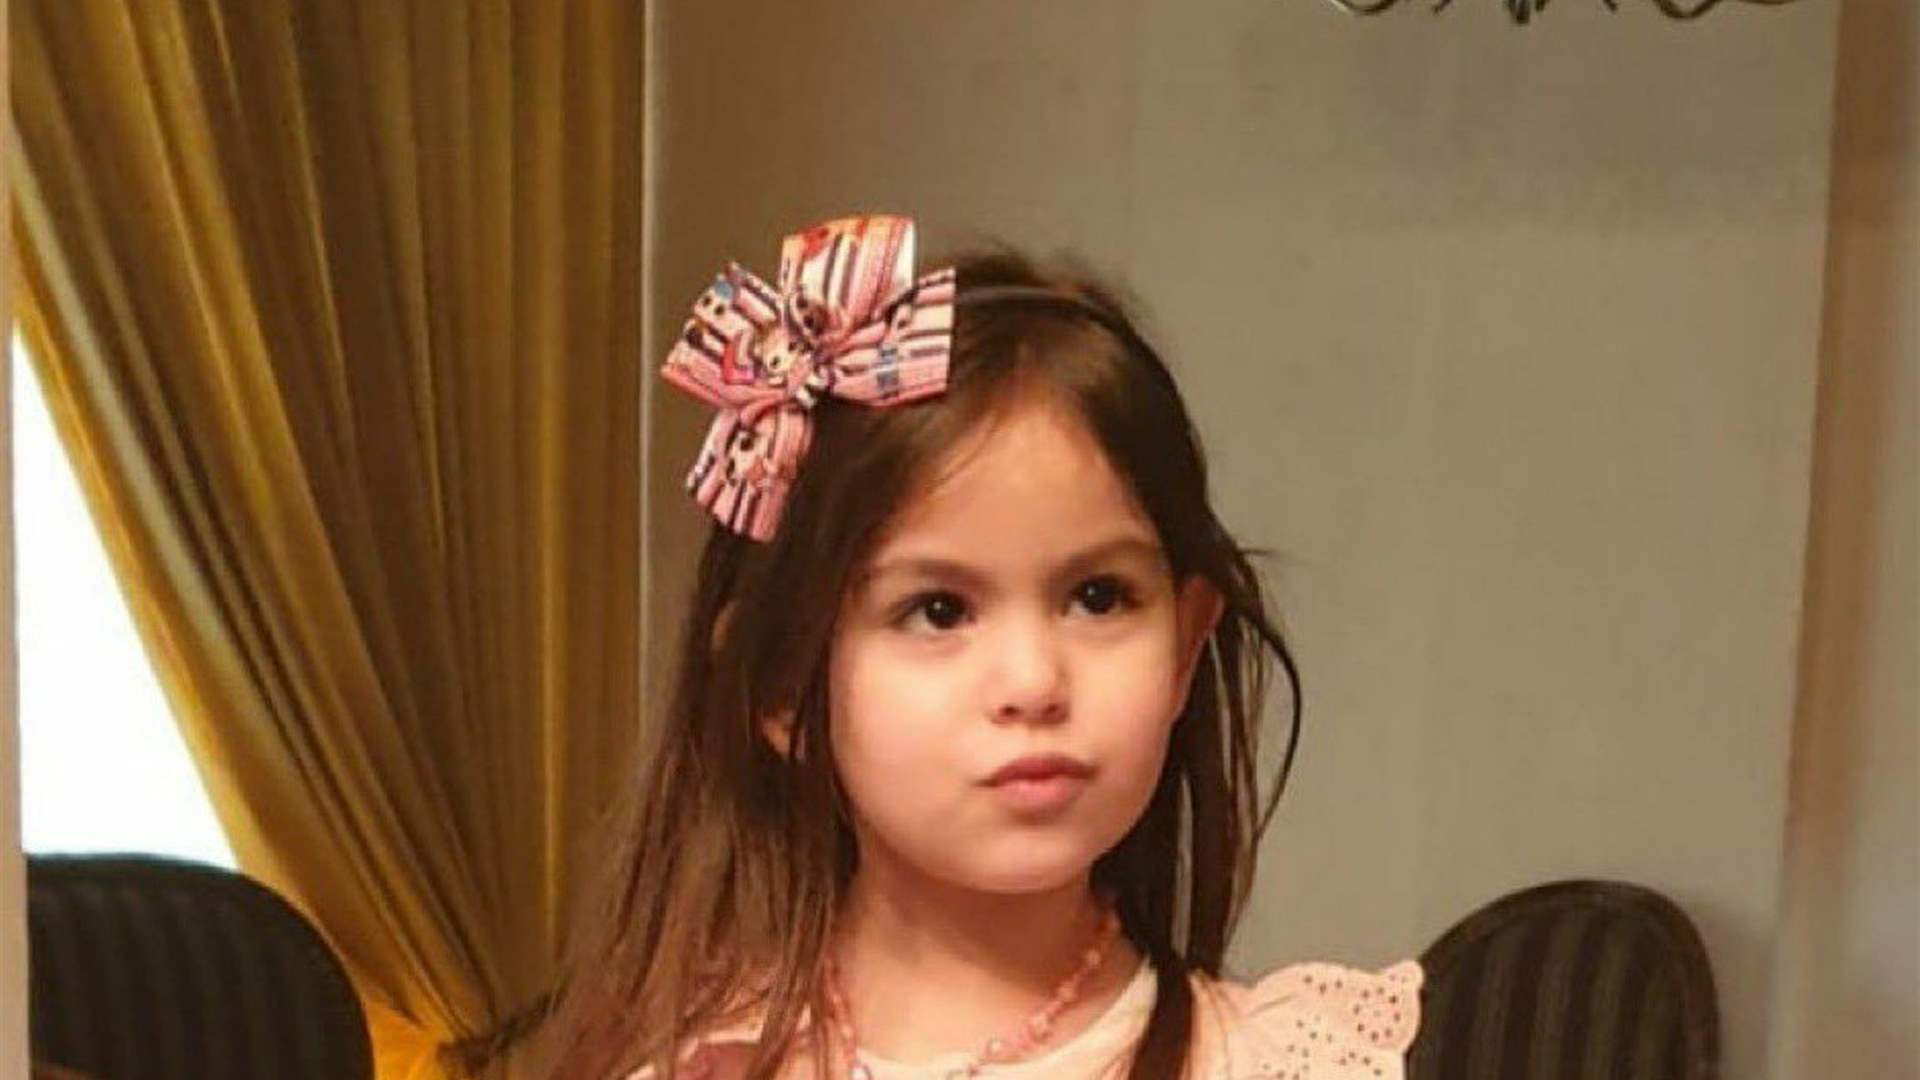 Celebratory gunfire tragedy claims life of 7-year-old Naya Hanna